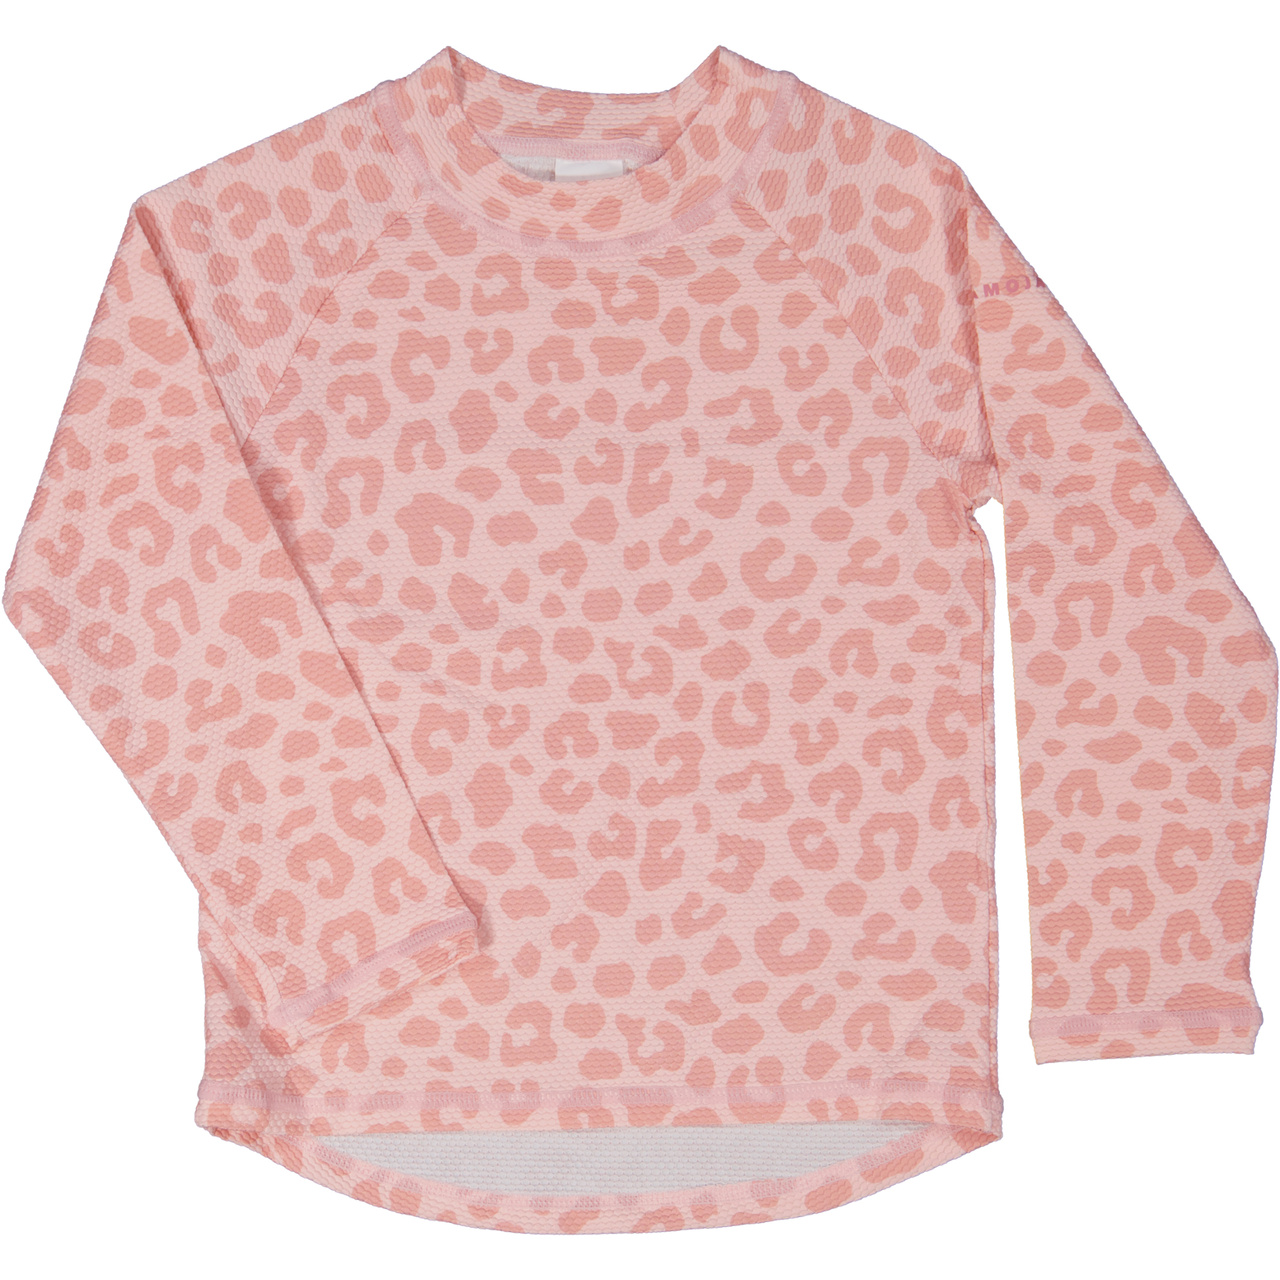 UV-L.S sweater Roosa Leo  98/104